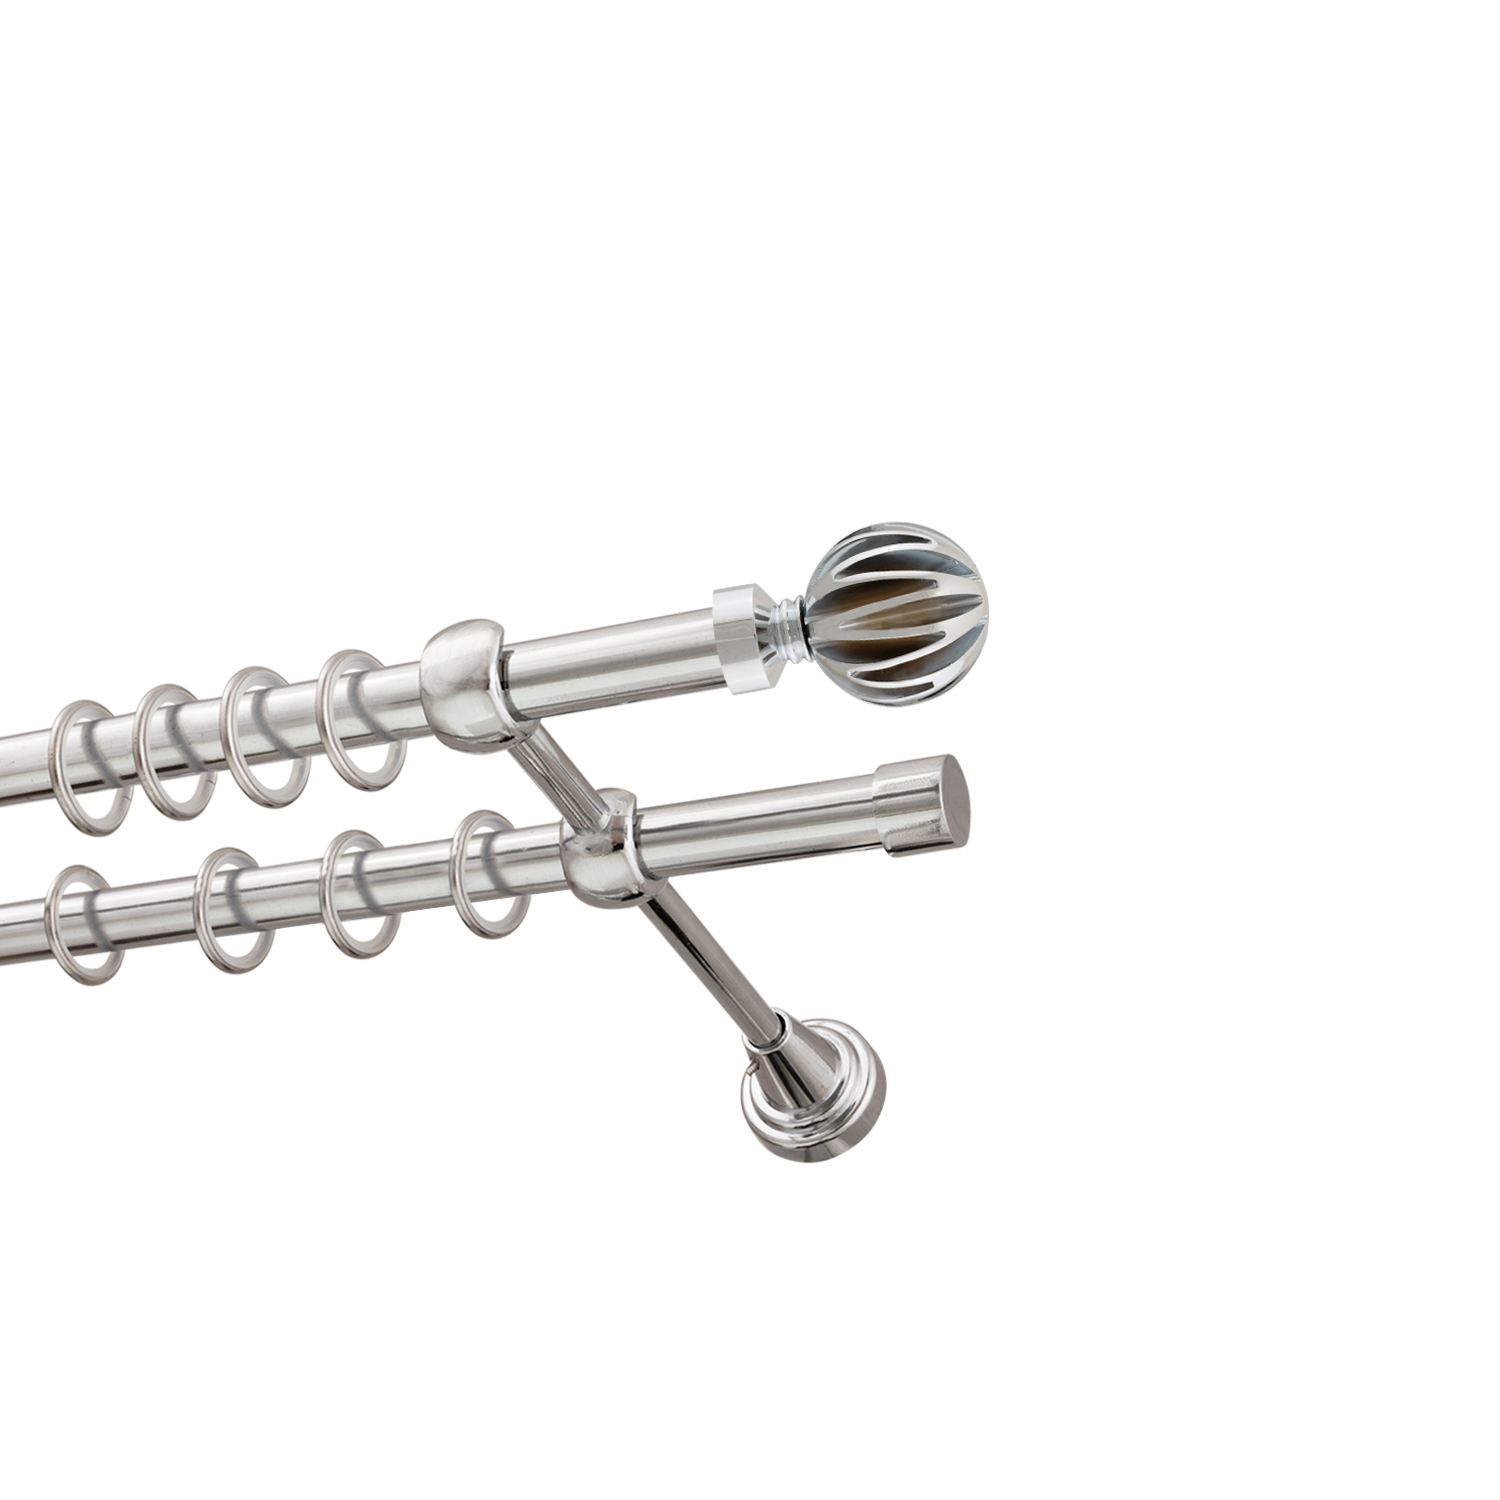 Металлический карниз для штор Шафран, двухрядный 16/16 мм, серебро, гладкая штанга, длина 140 см